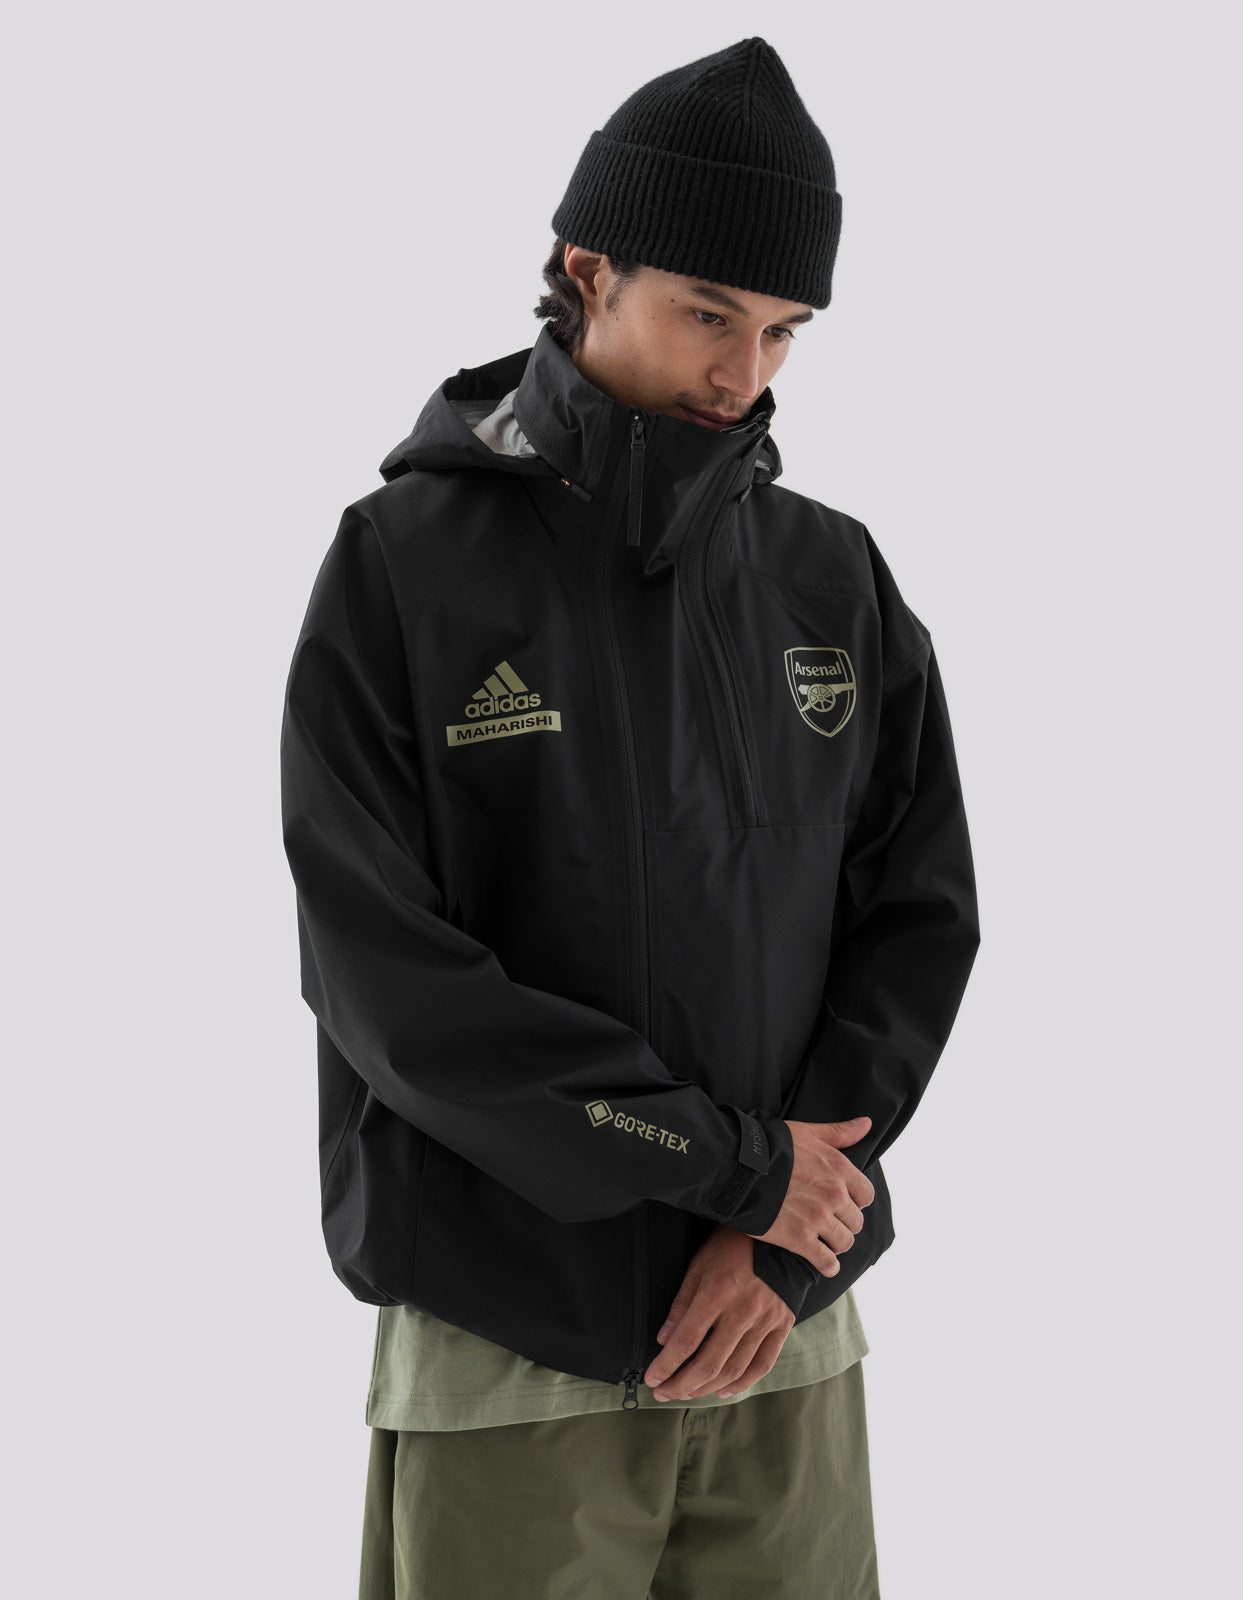 Maharishi Arsenal FC Myshelter Gore-Tex Jacket